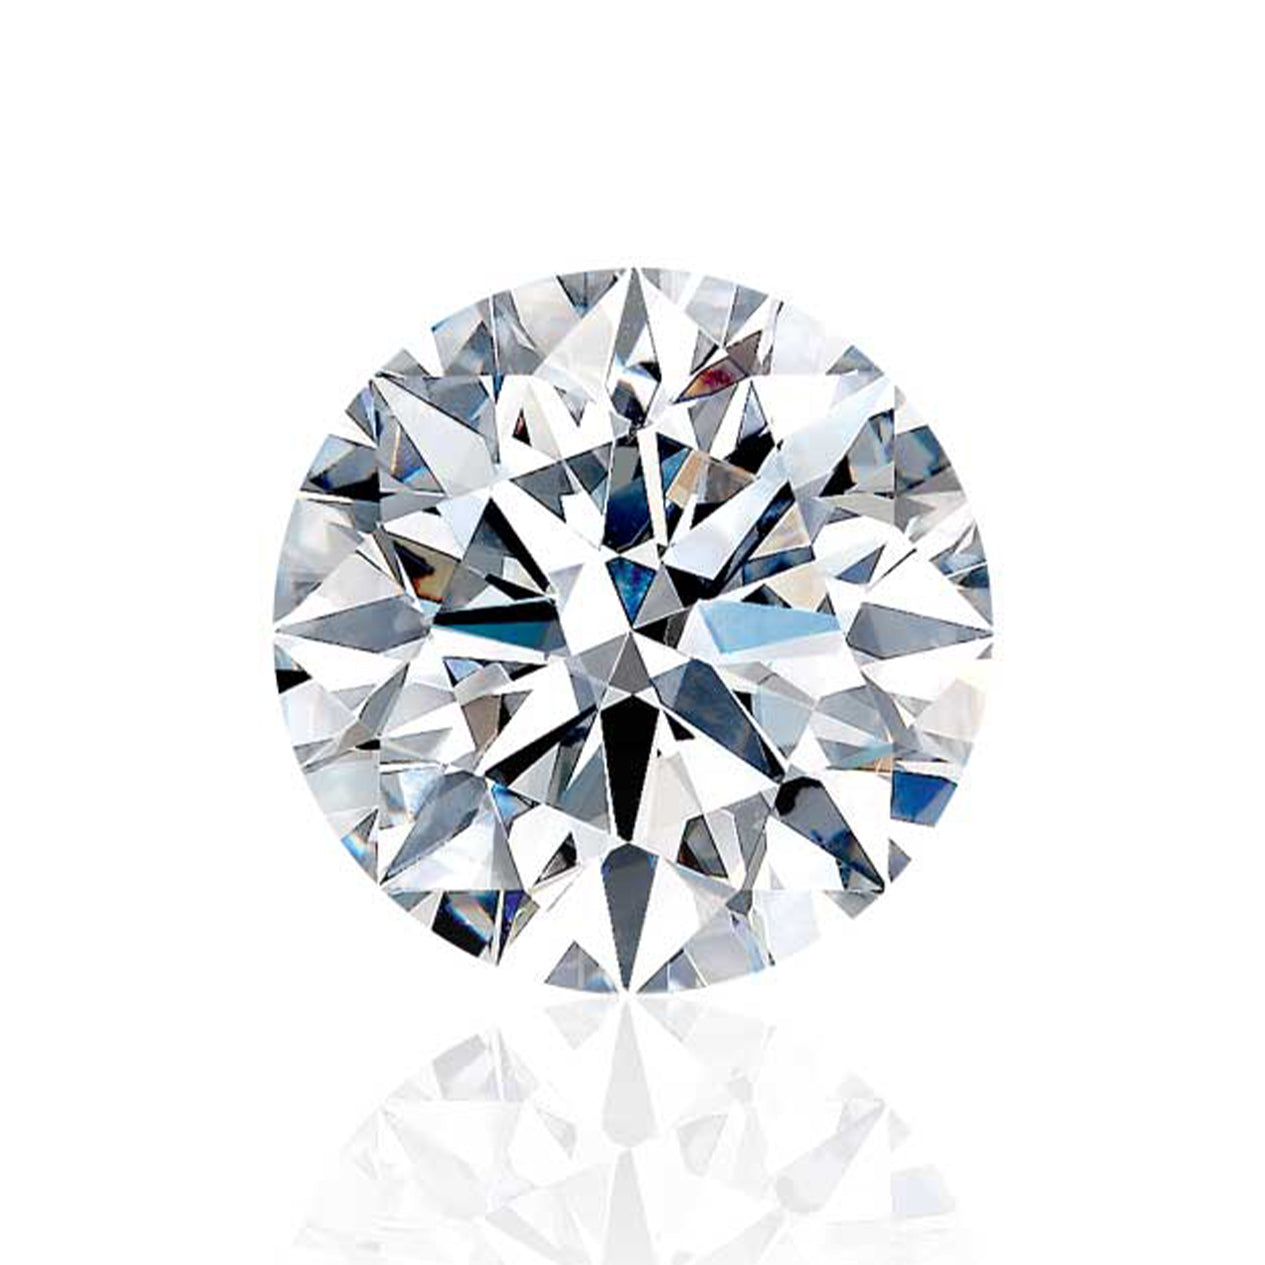 A Shimansky Jewellery Diamond cut